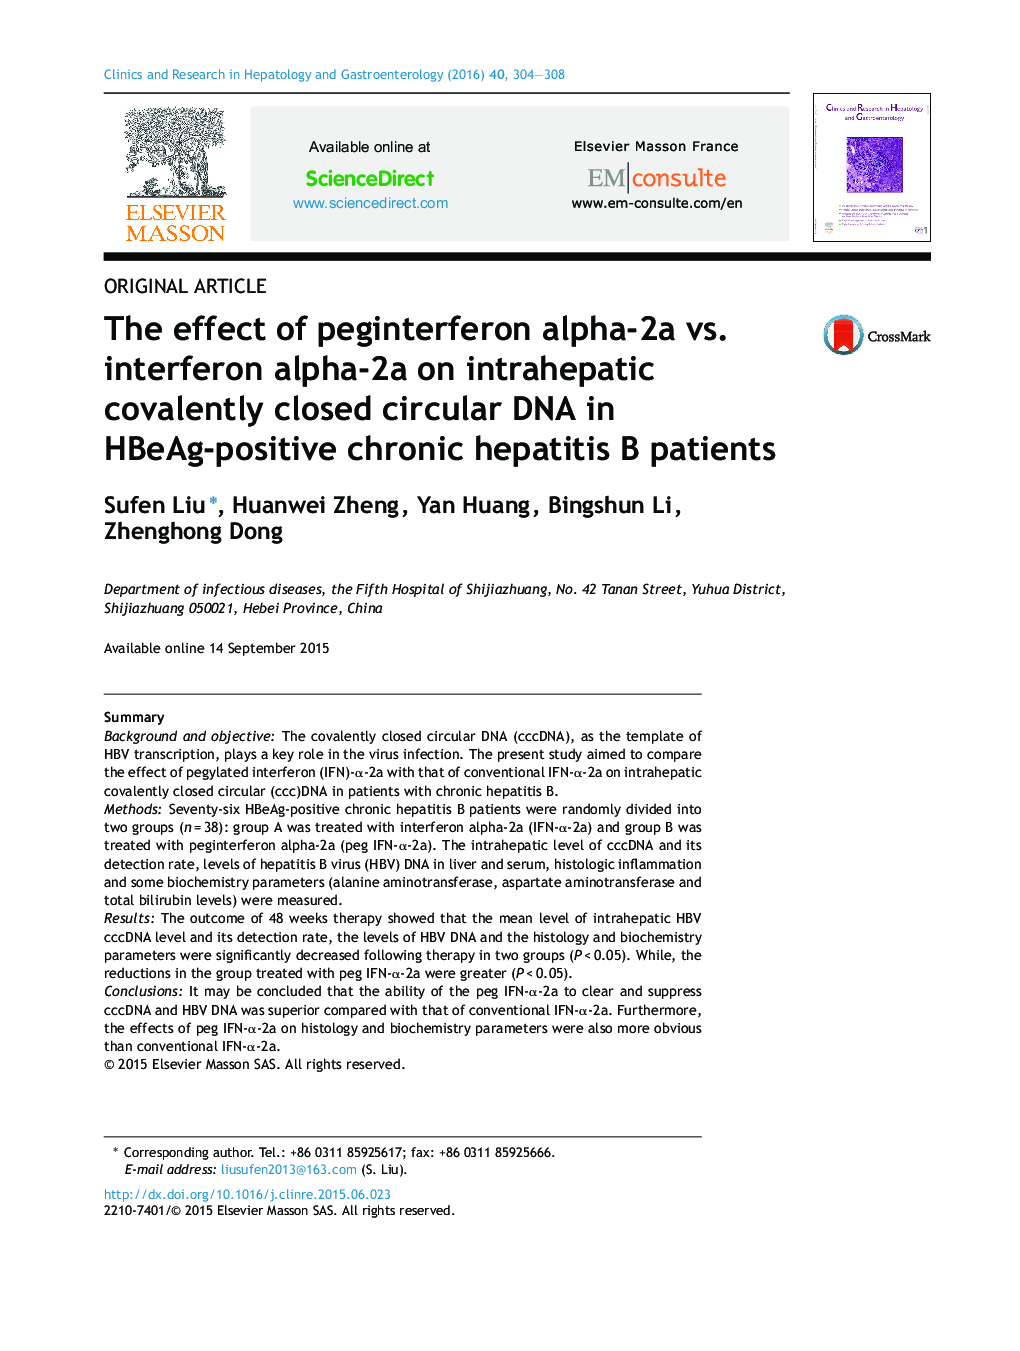 اثر پگ آلفا-2A در مقابل اینترفرون آلفا-2A بر DNA دایره بسته کووالانسی داخل کبدی در بیماران هپاتیت B مزمن HBeAg مثبت